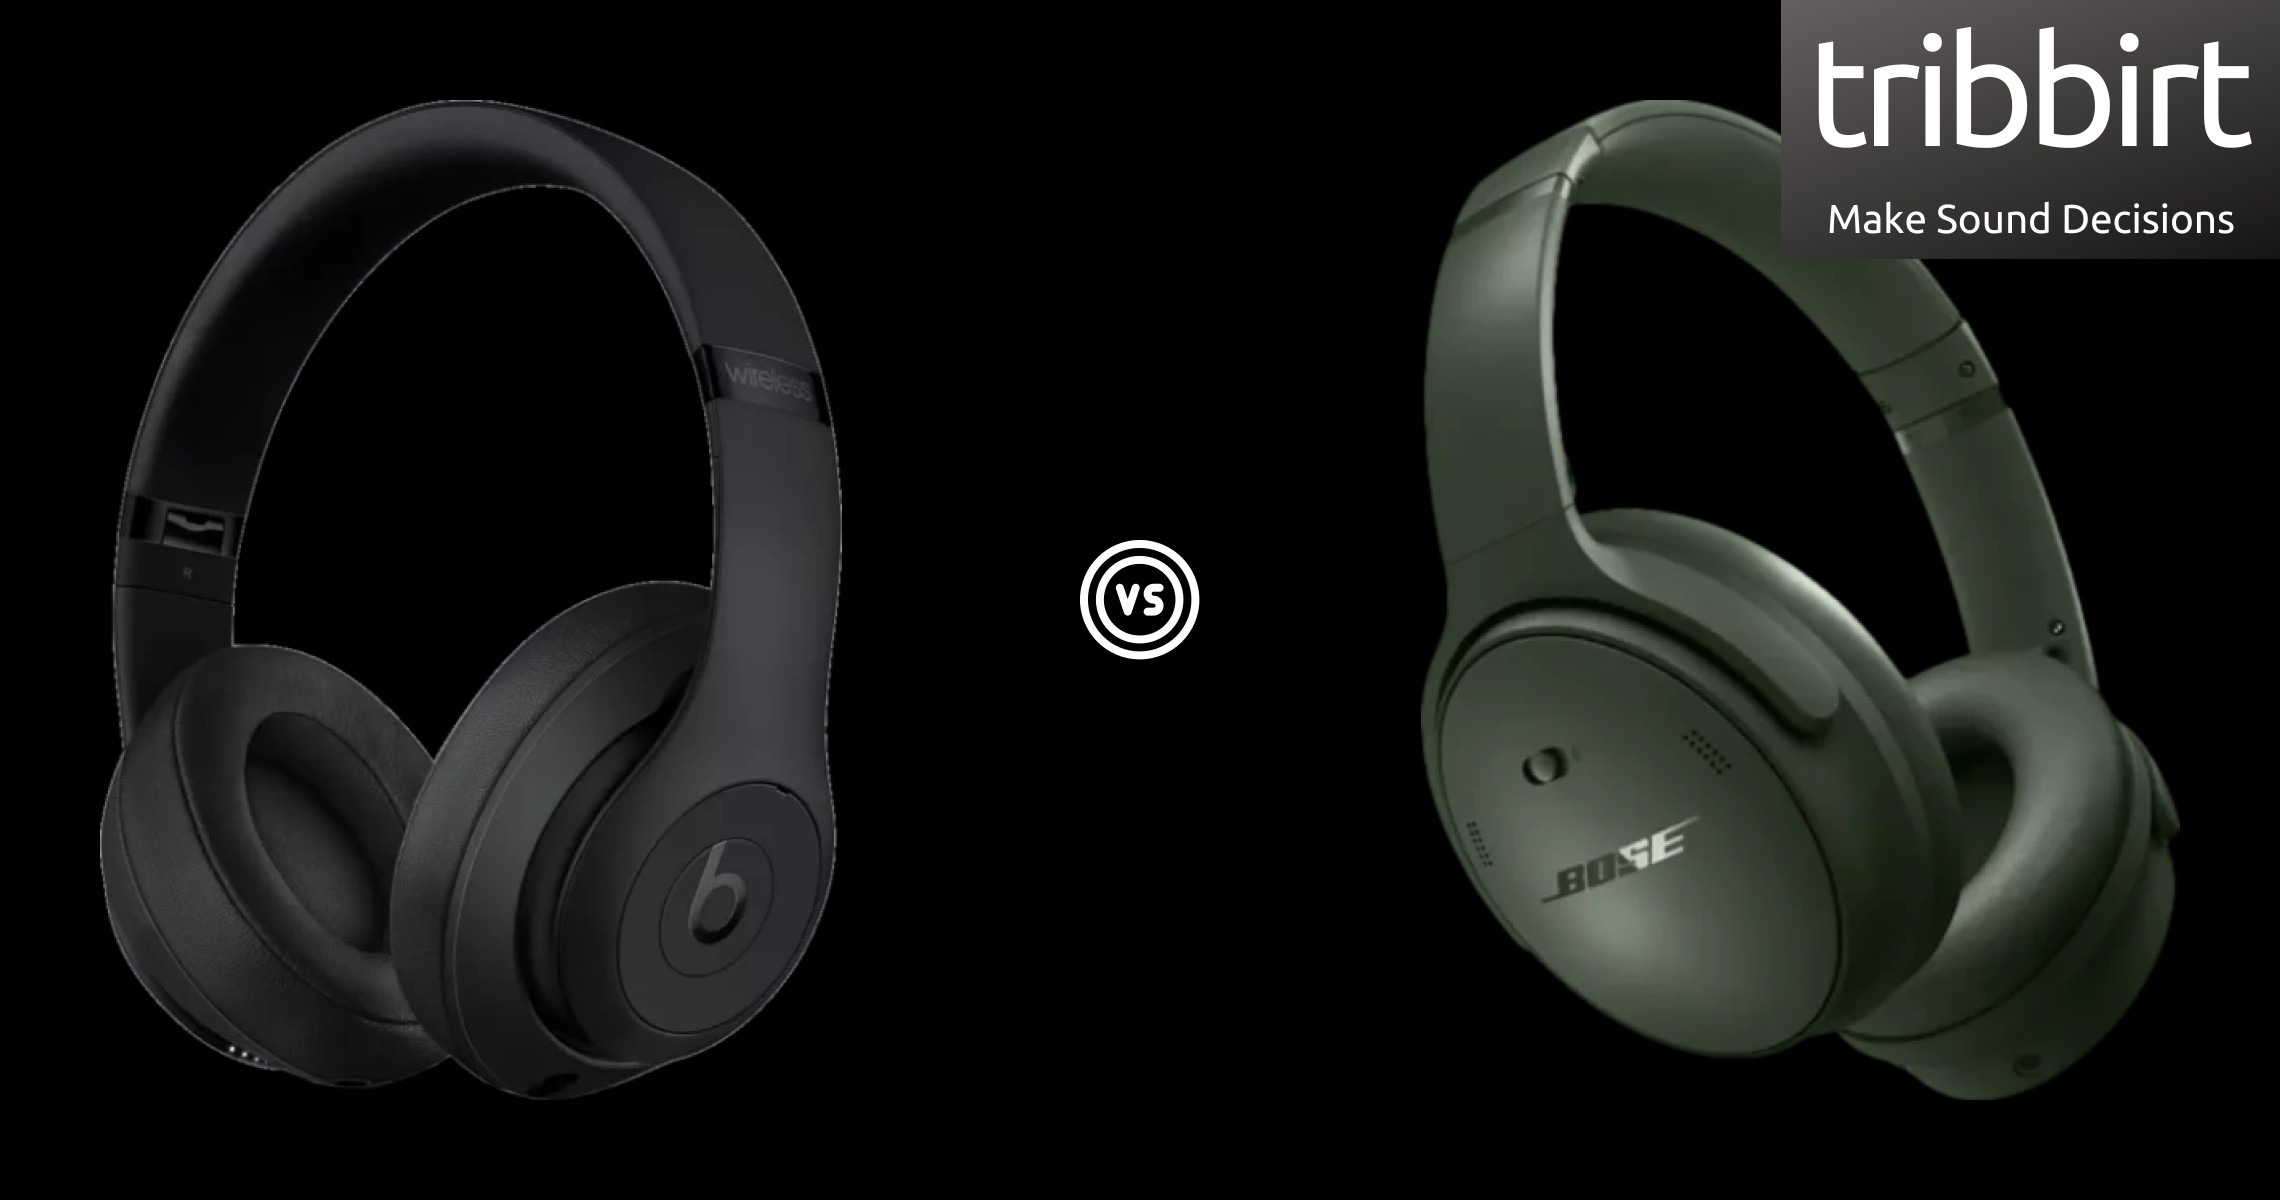  Bose Quietcomfort Headphones Vs. Beats Studio3 Wireless